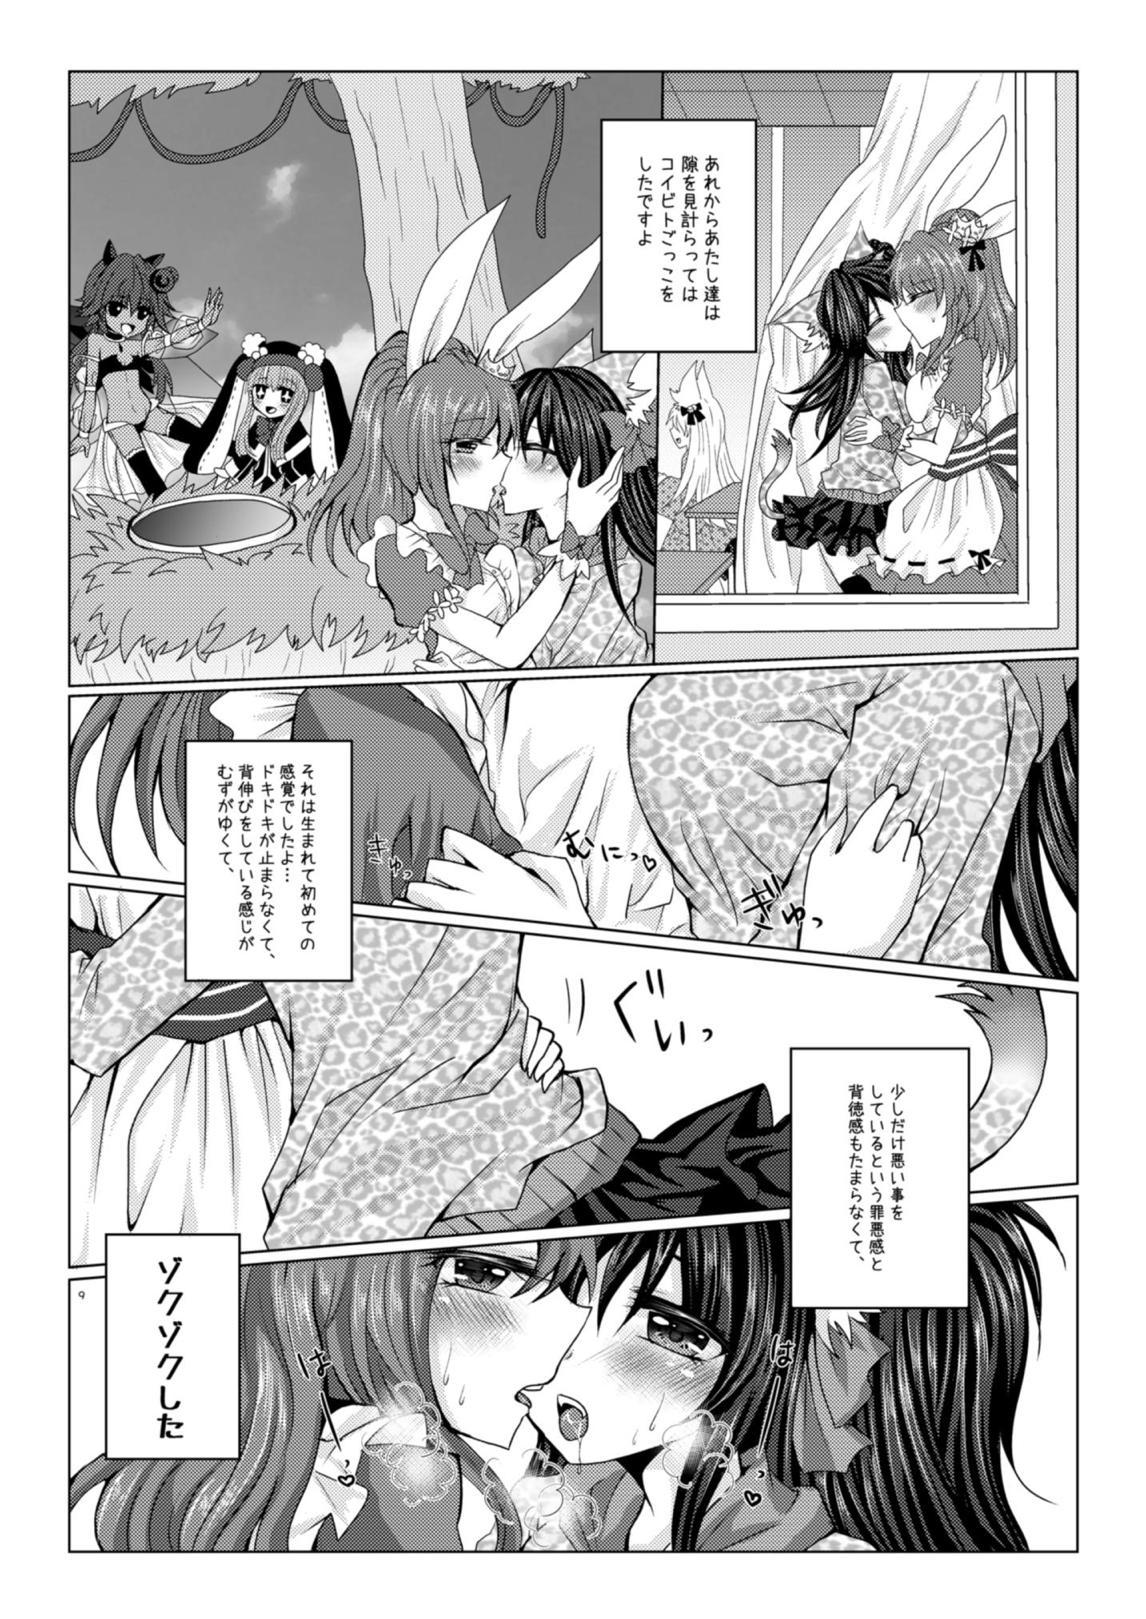 Classy Girls' Talk wa Amakunai - Emil chronicle online Kitchen - Page 8